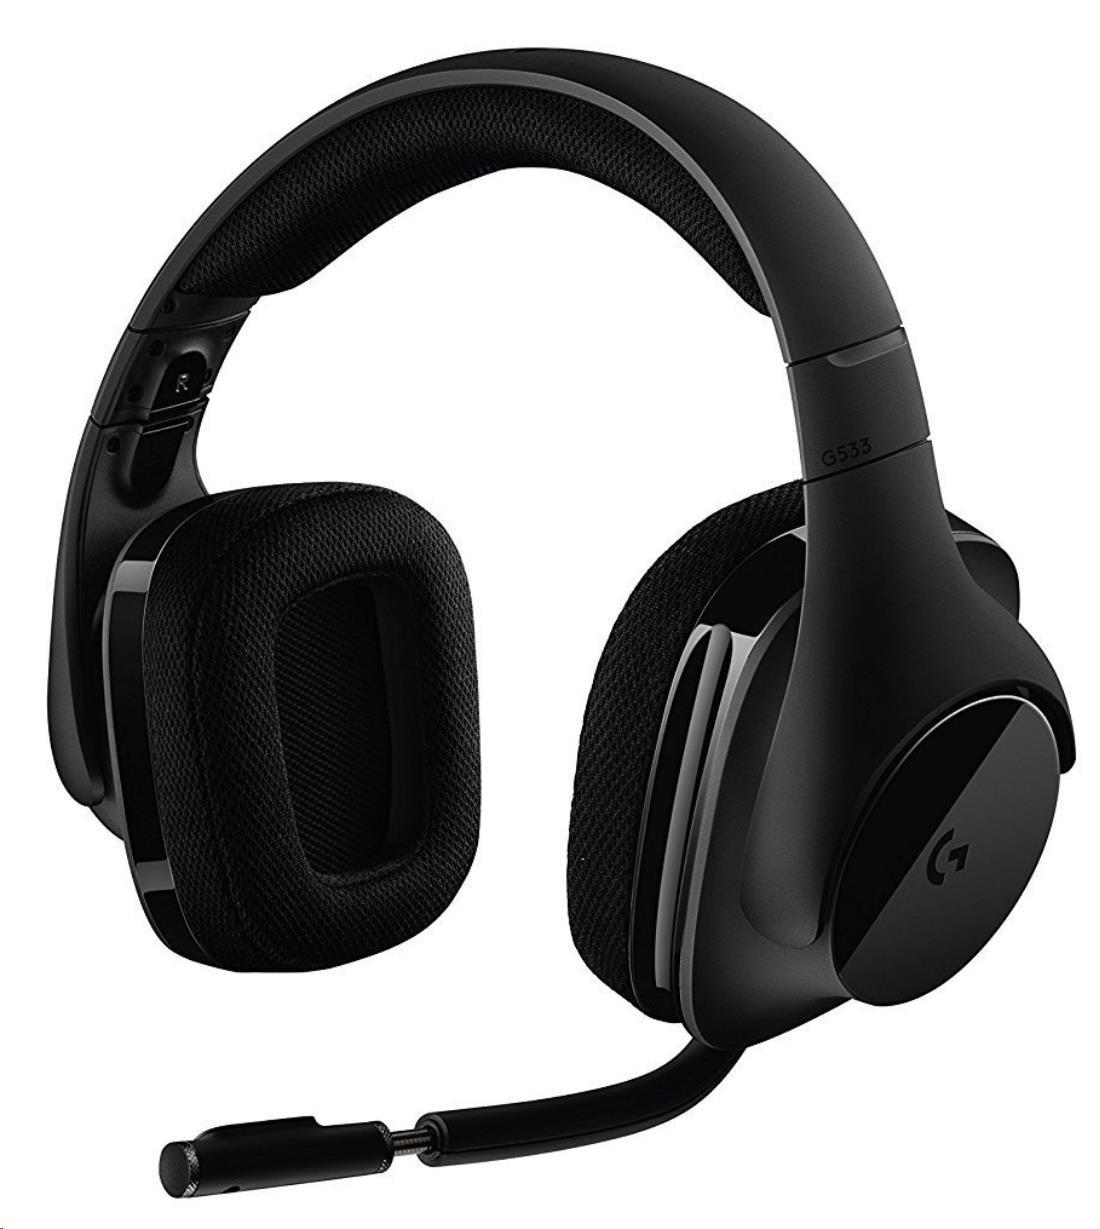 Logitech herní sluchátka G533, Wireless Gaming Headset3 